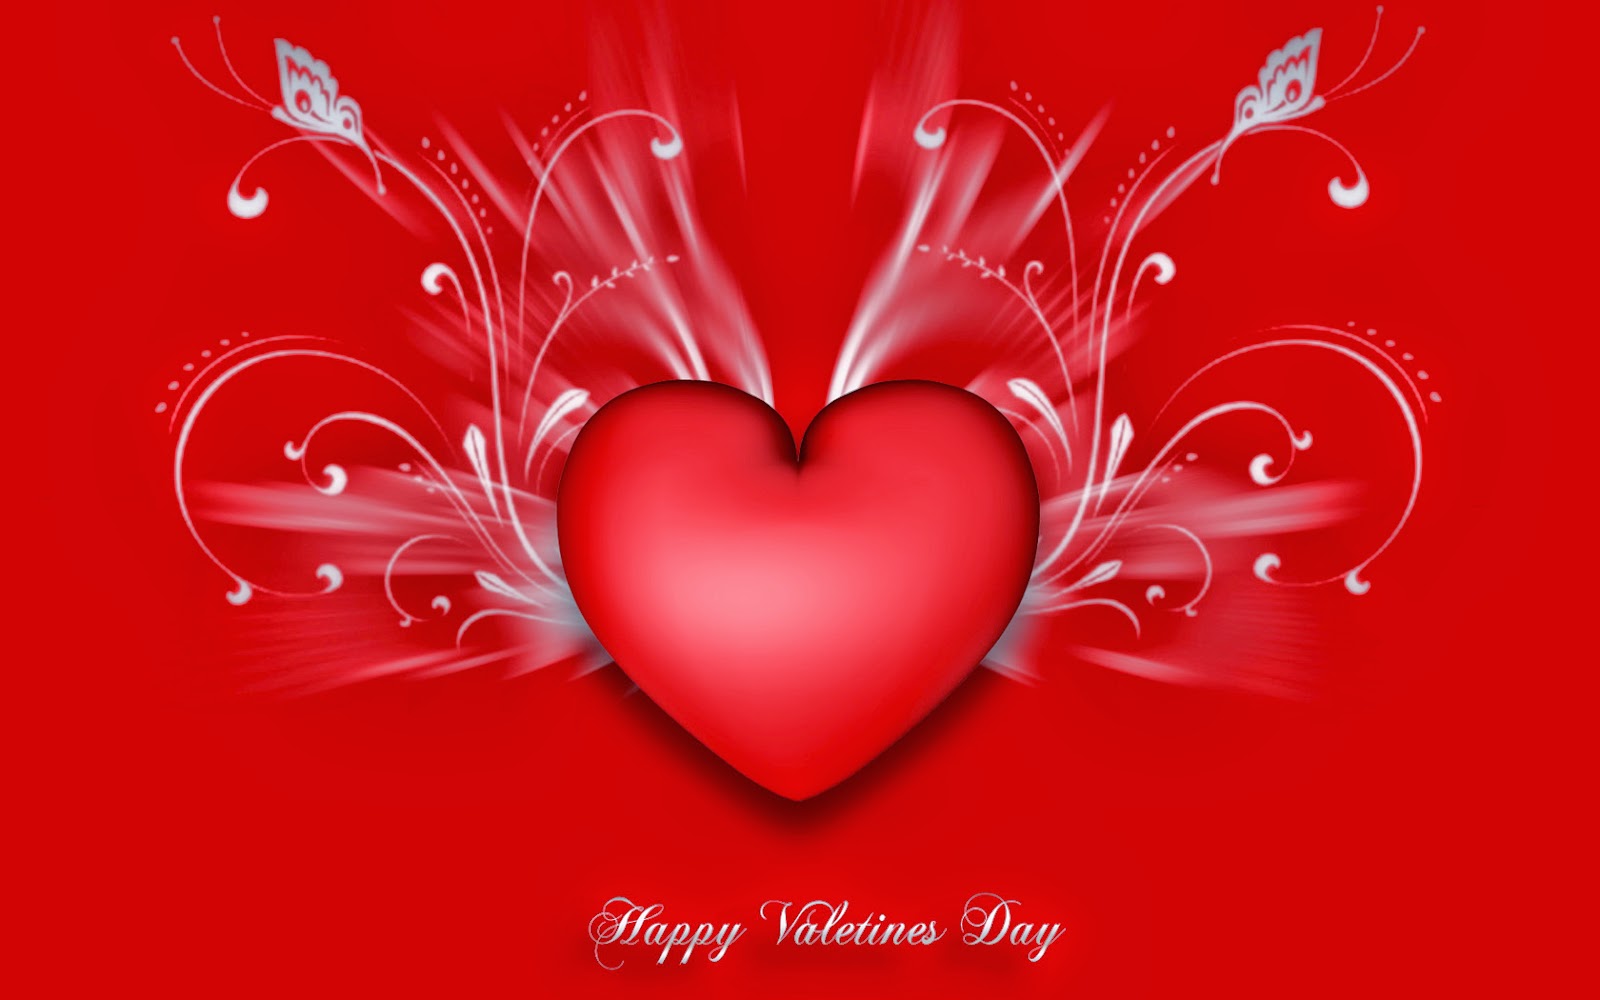 free valentine wallpaper,heart,red,love,valentine's day,organ